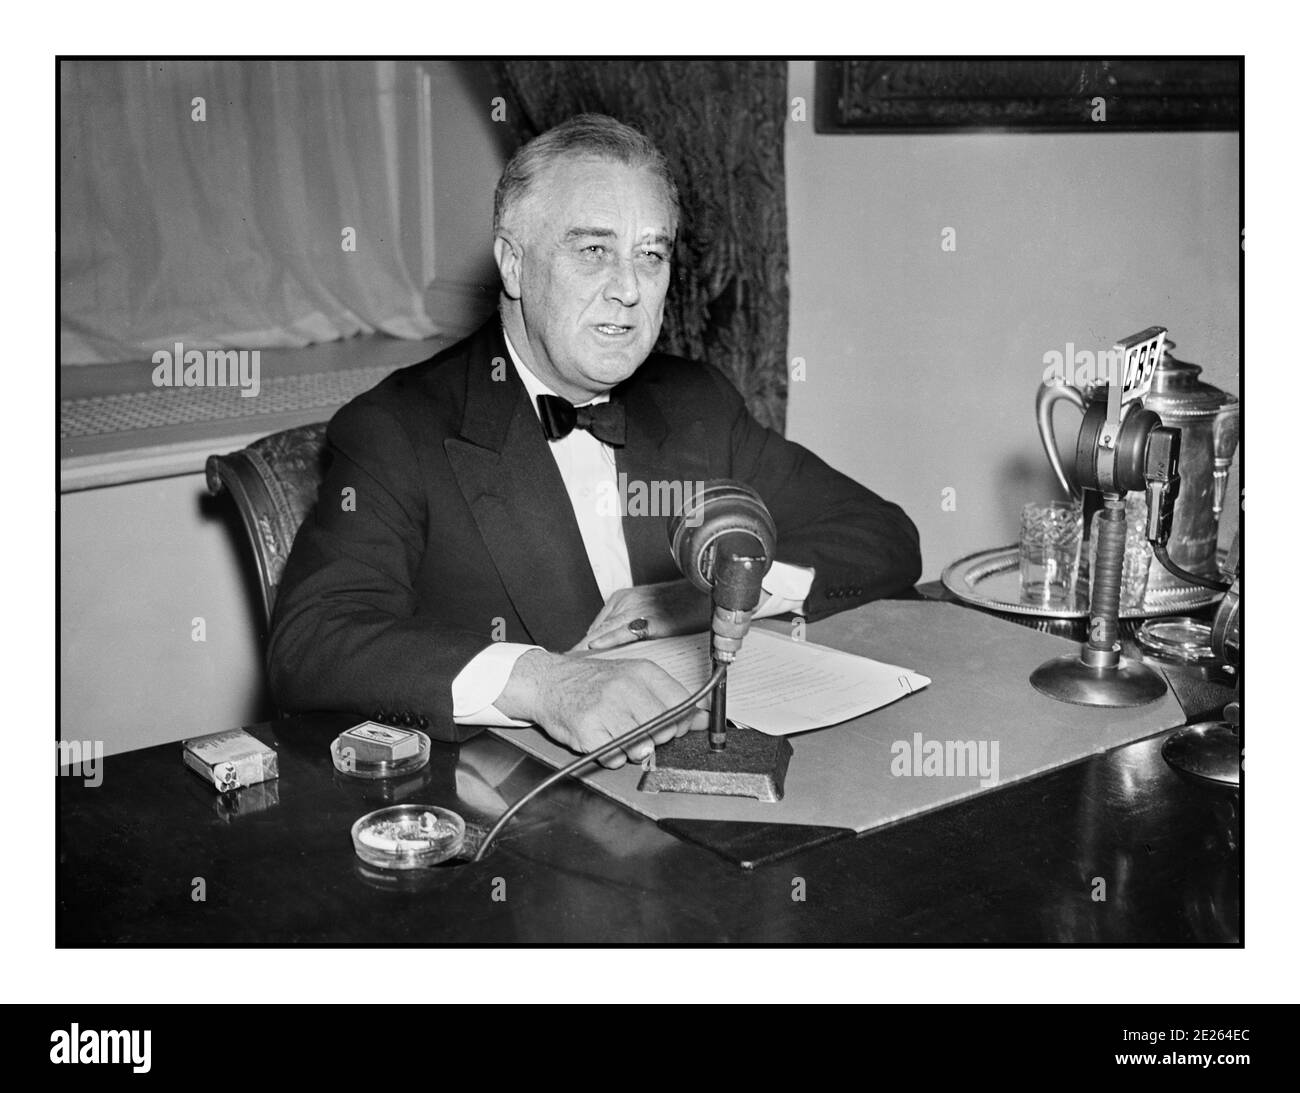 Franklin D. Roosevelt des années 1930 donnant une émission de radio (« chat au coin du feu ») septembre 1934. Sur son bureau, les microphones de diffusion réseau CBS et NBC. Franklin Delano Roosevelt Sr., souvent cité par ses initiales FDR, était un homme d'État américain et un dirigeant politique qui a servi comme 32e président des États-Unis de 1933 à sa mort en 1945. Banque D'Images